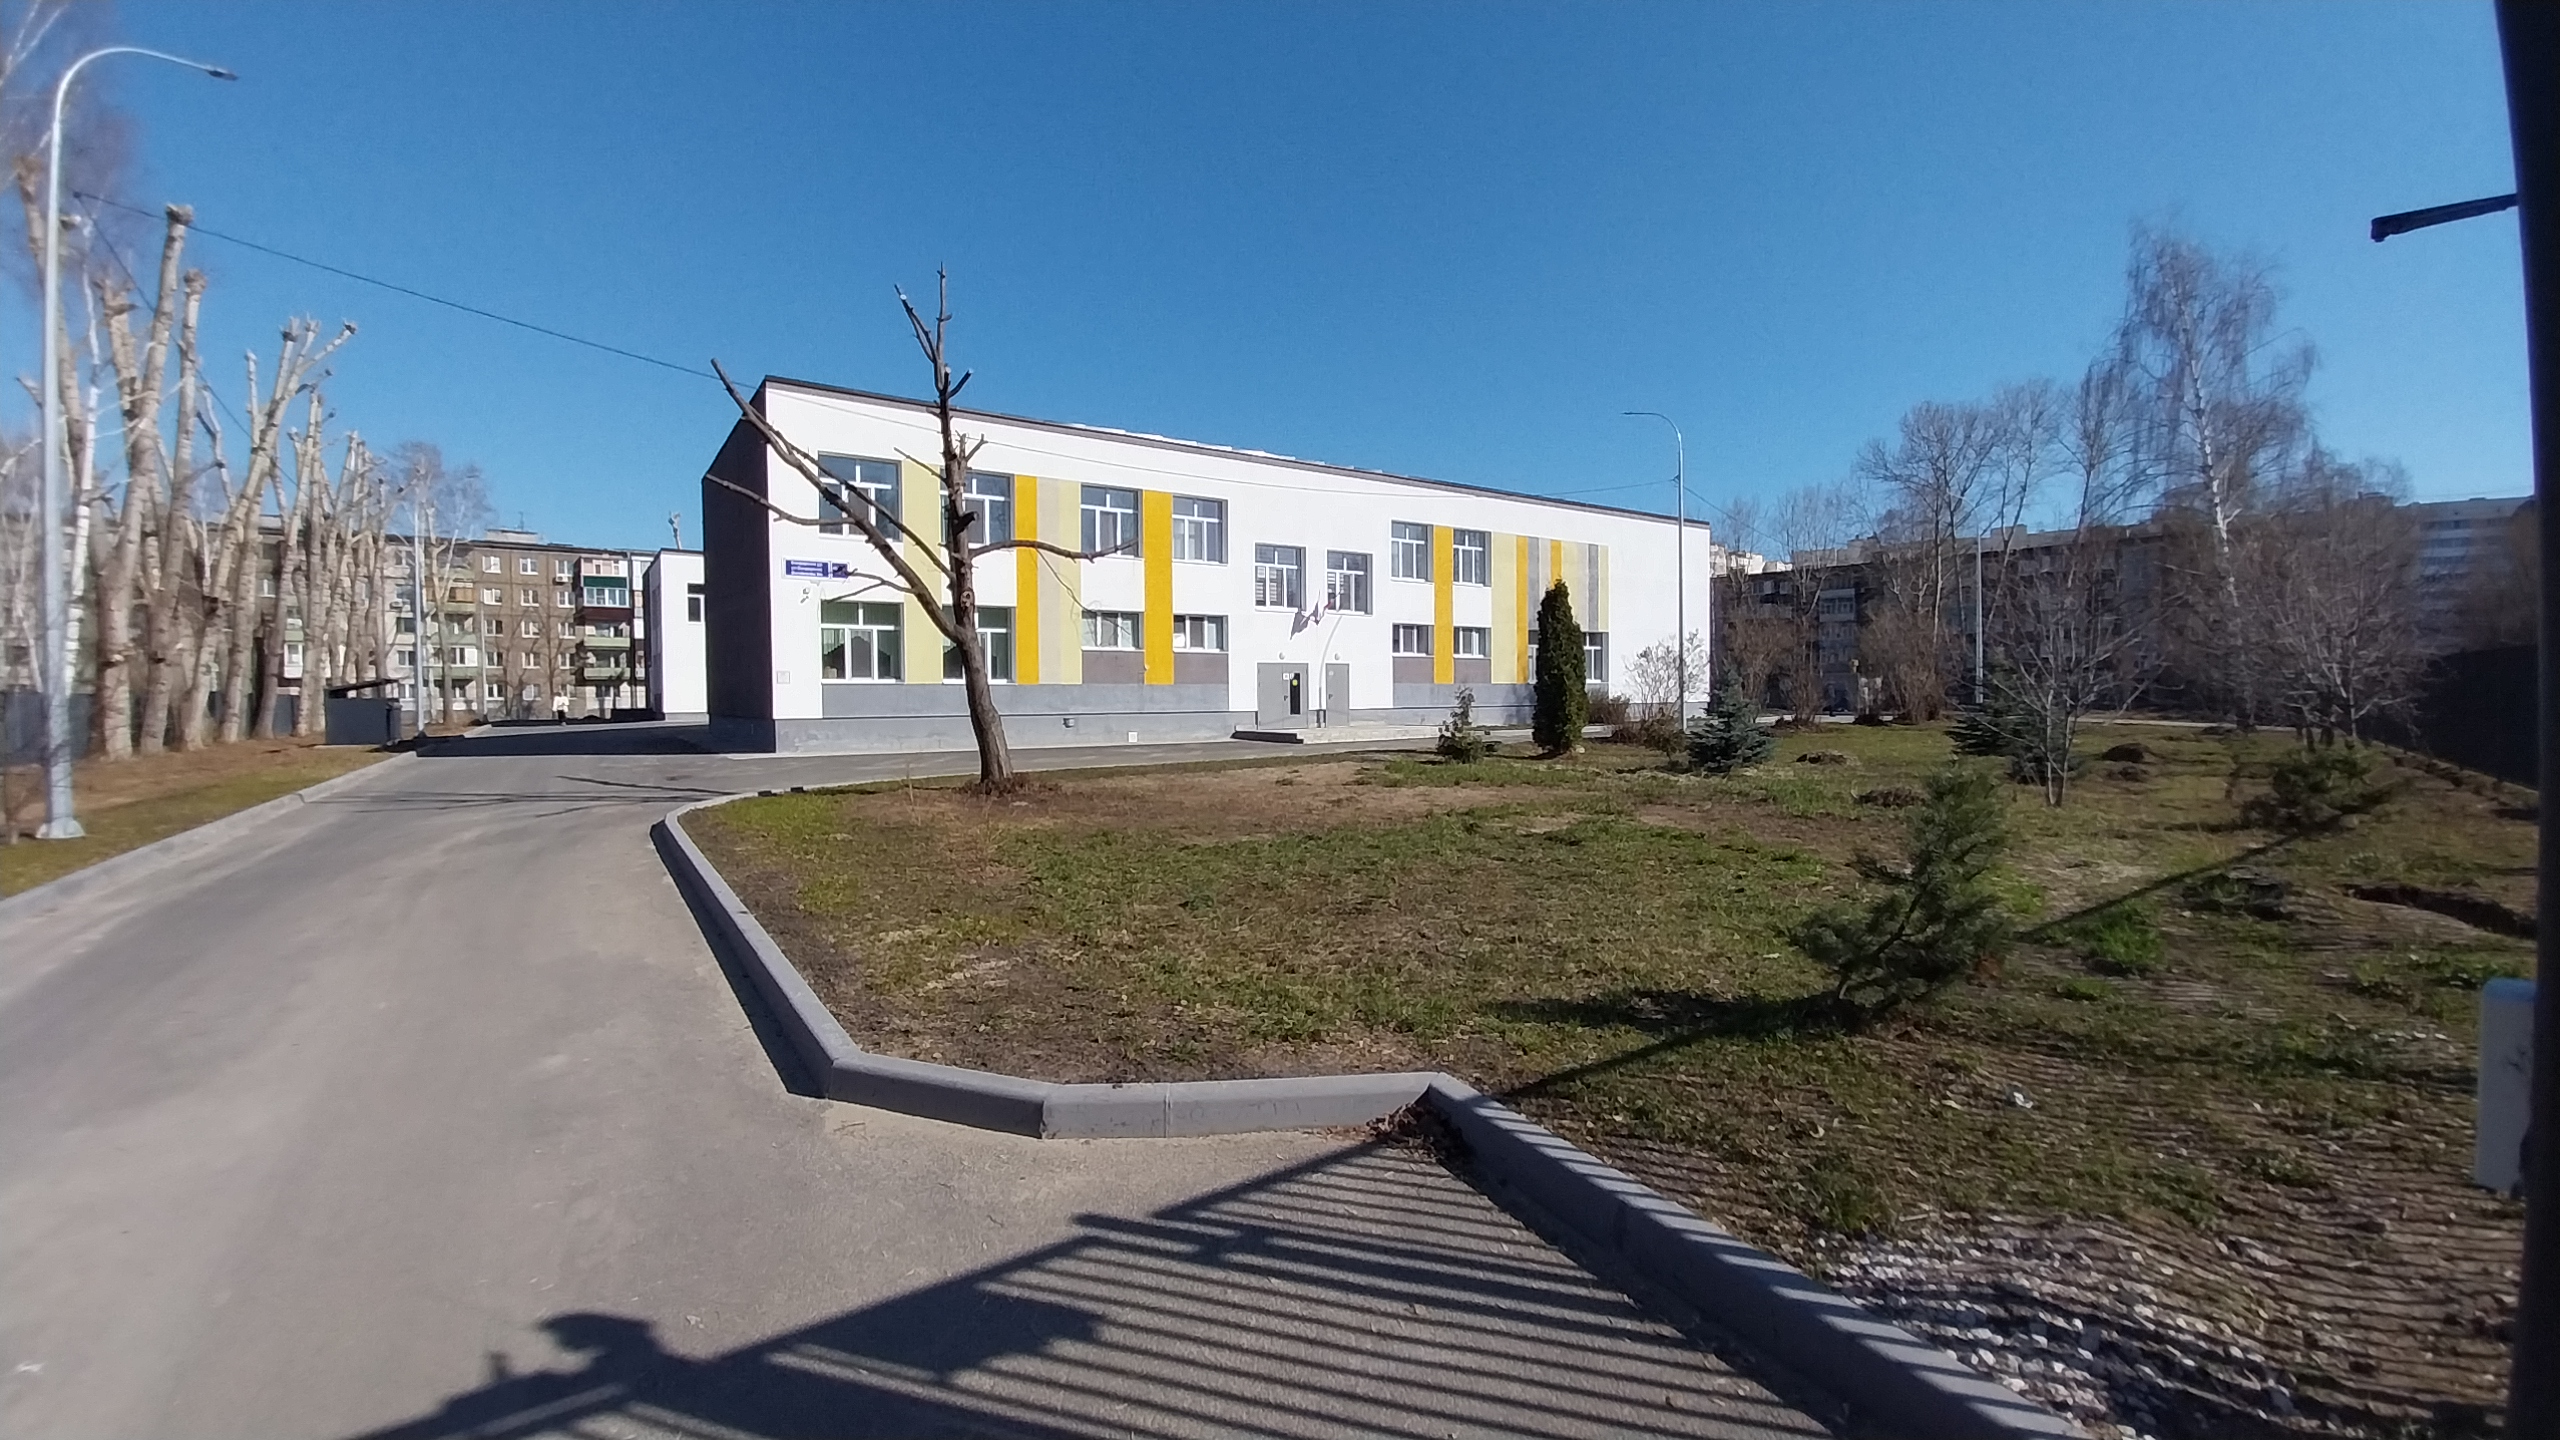 Школа №172 средняя общеобразовательная, Казань учителя представлены в форме таблицы. 